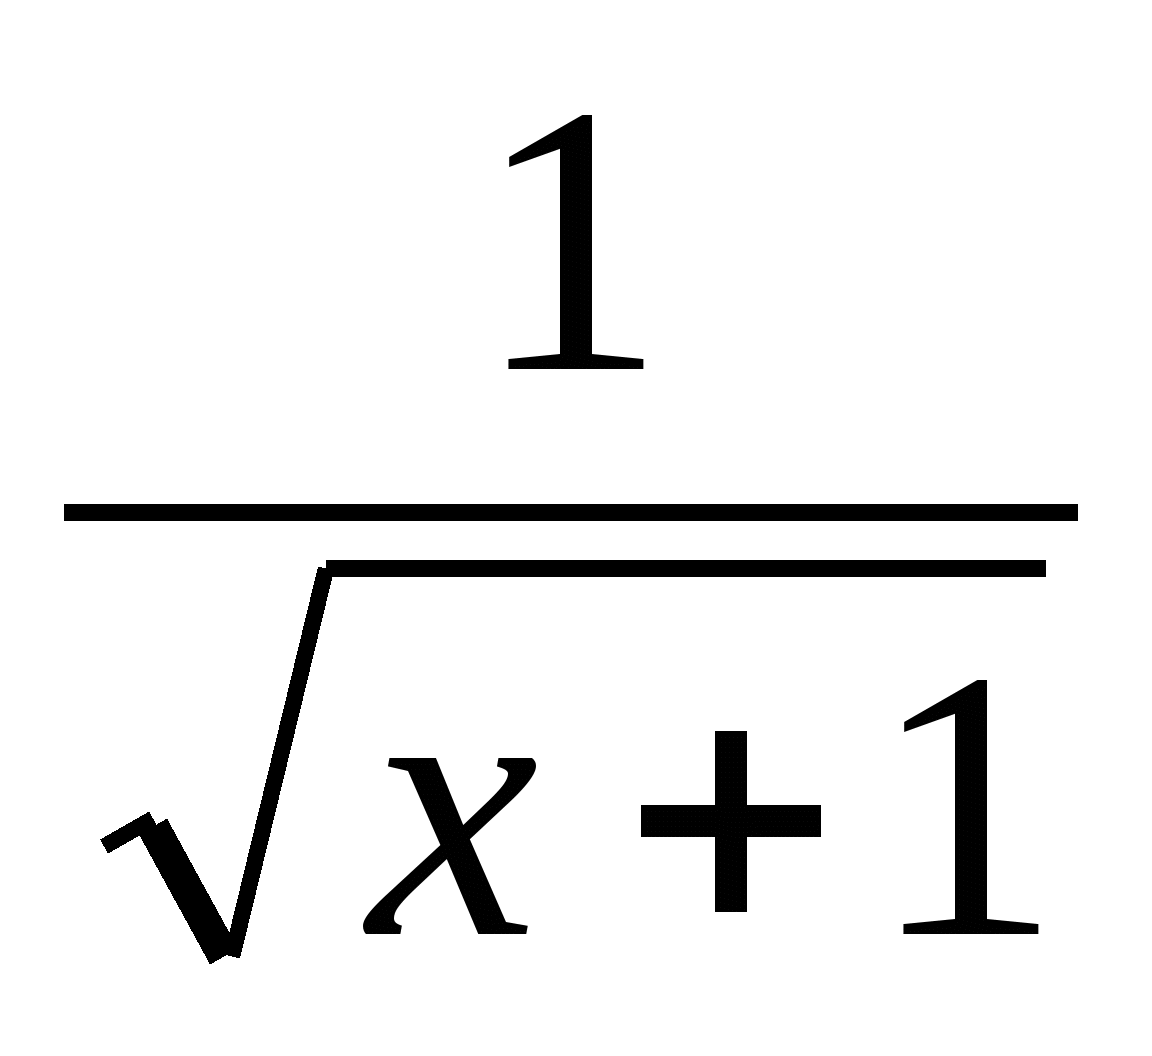 Педагогический измерительный материал эллективного курса Избранные вопросы математики (11 класс)